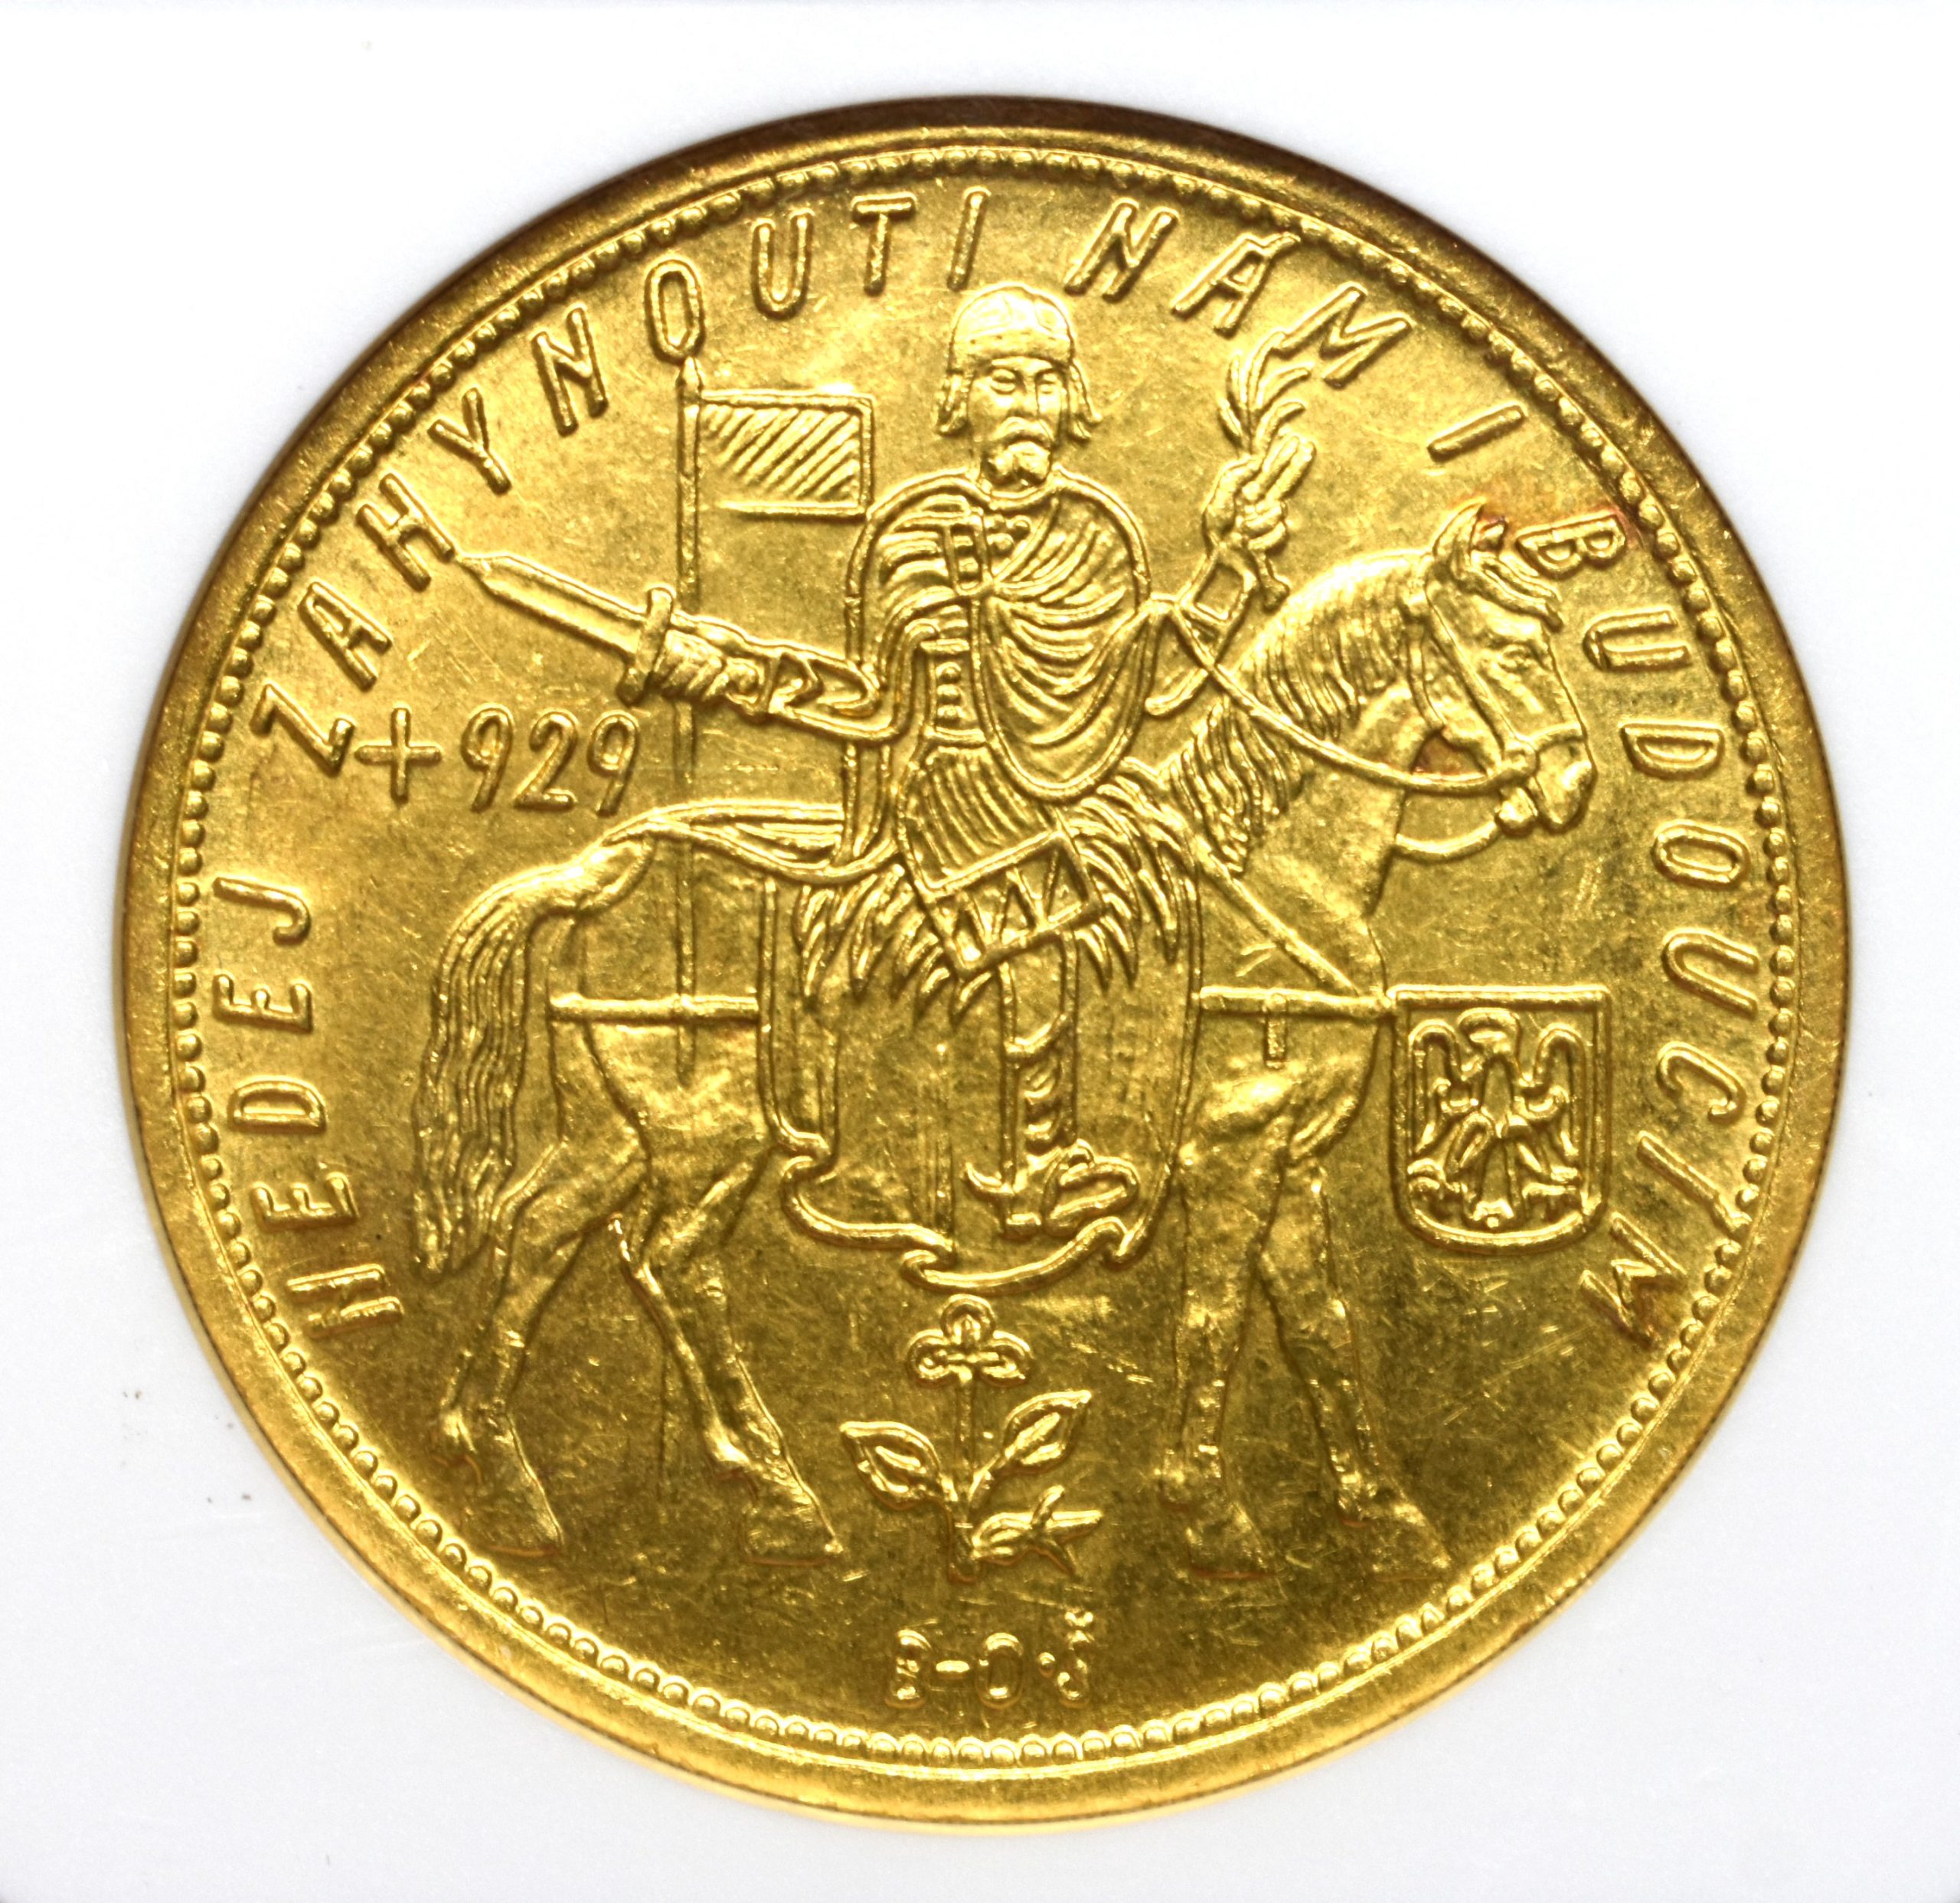 Sold】【再掲載】1929年 チェコ 10ダカット金貨 MS64 NGC | ソブリン 